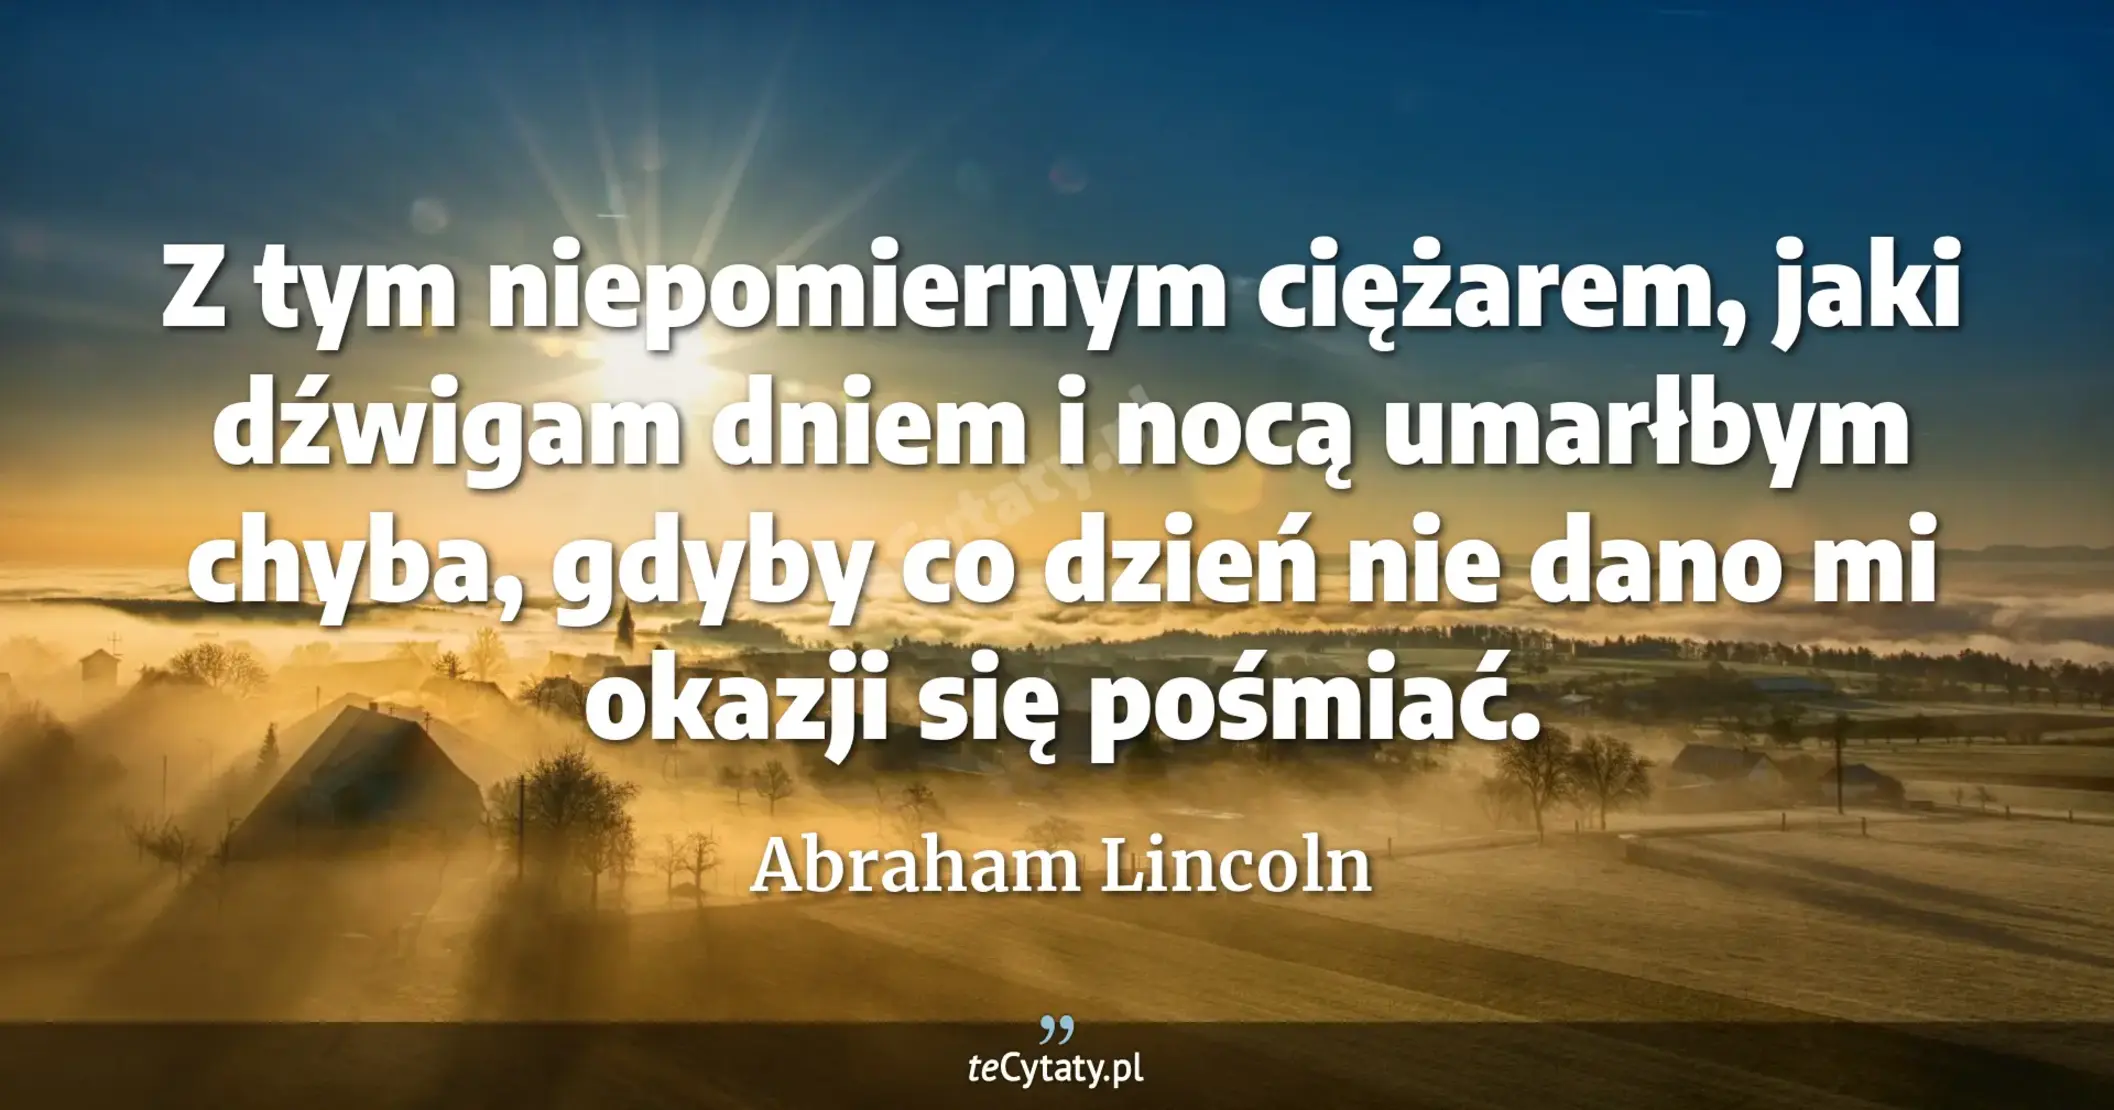 Z tym niepomiernym ciężarem, jaki dźwigam dniem i nocą umarłbym chyba, gdyby co dzień nie dano mi okazji się pośmiać. - Abraham Lincoln